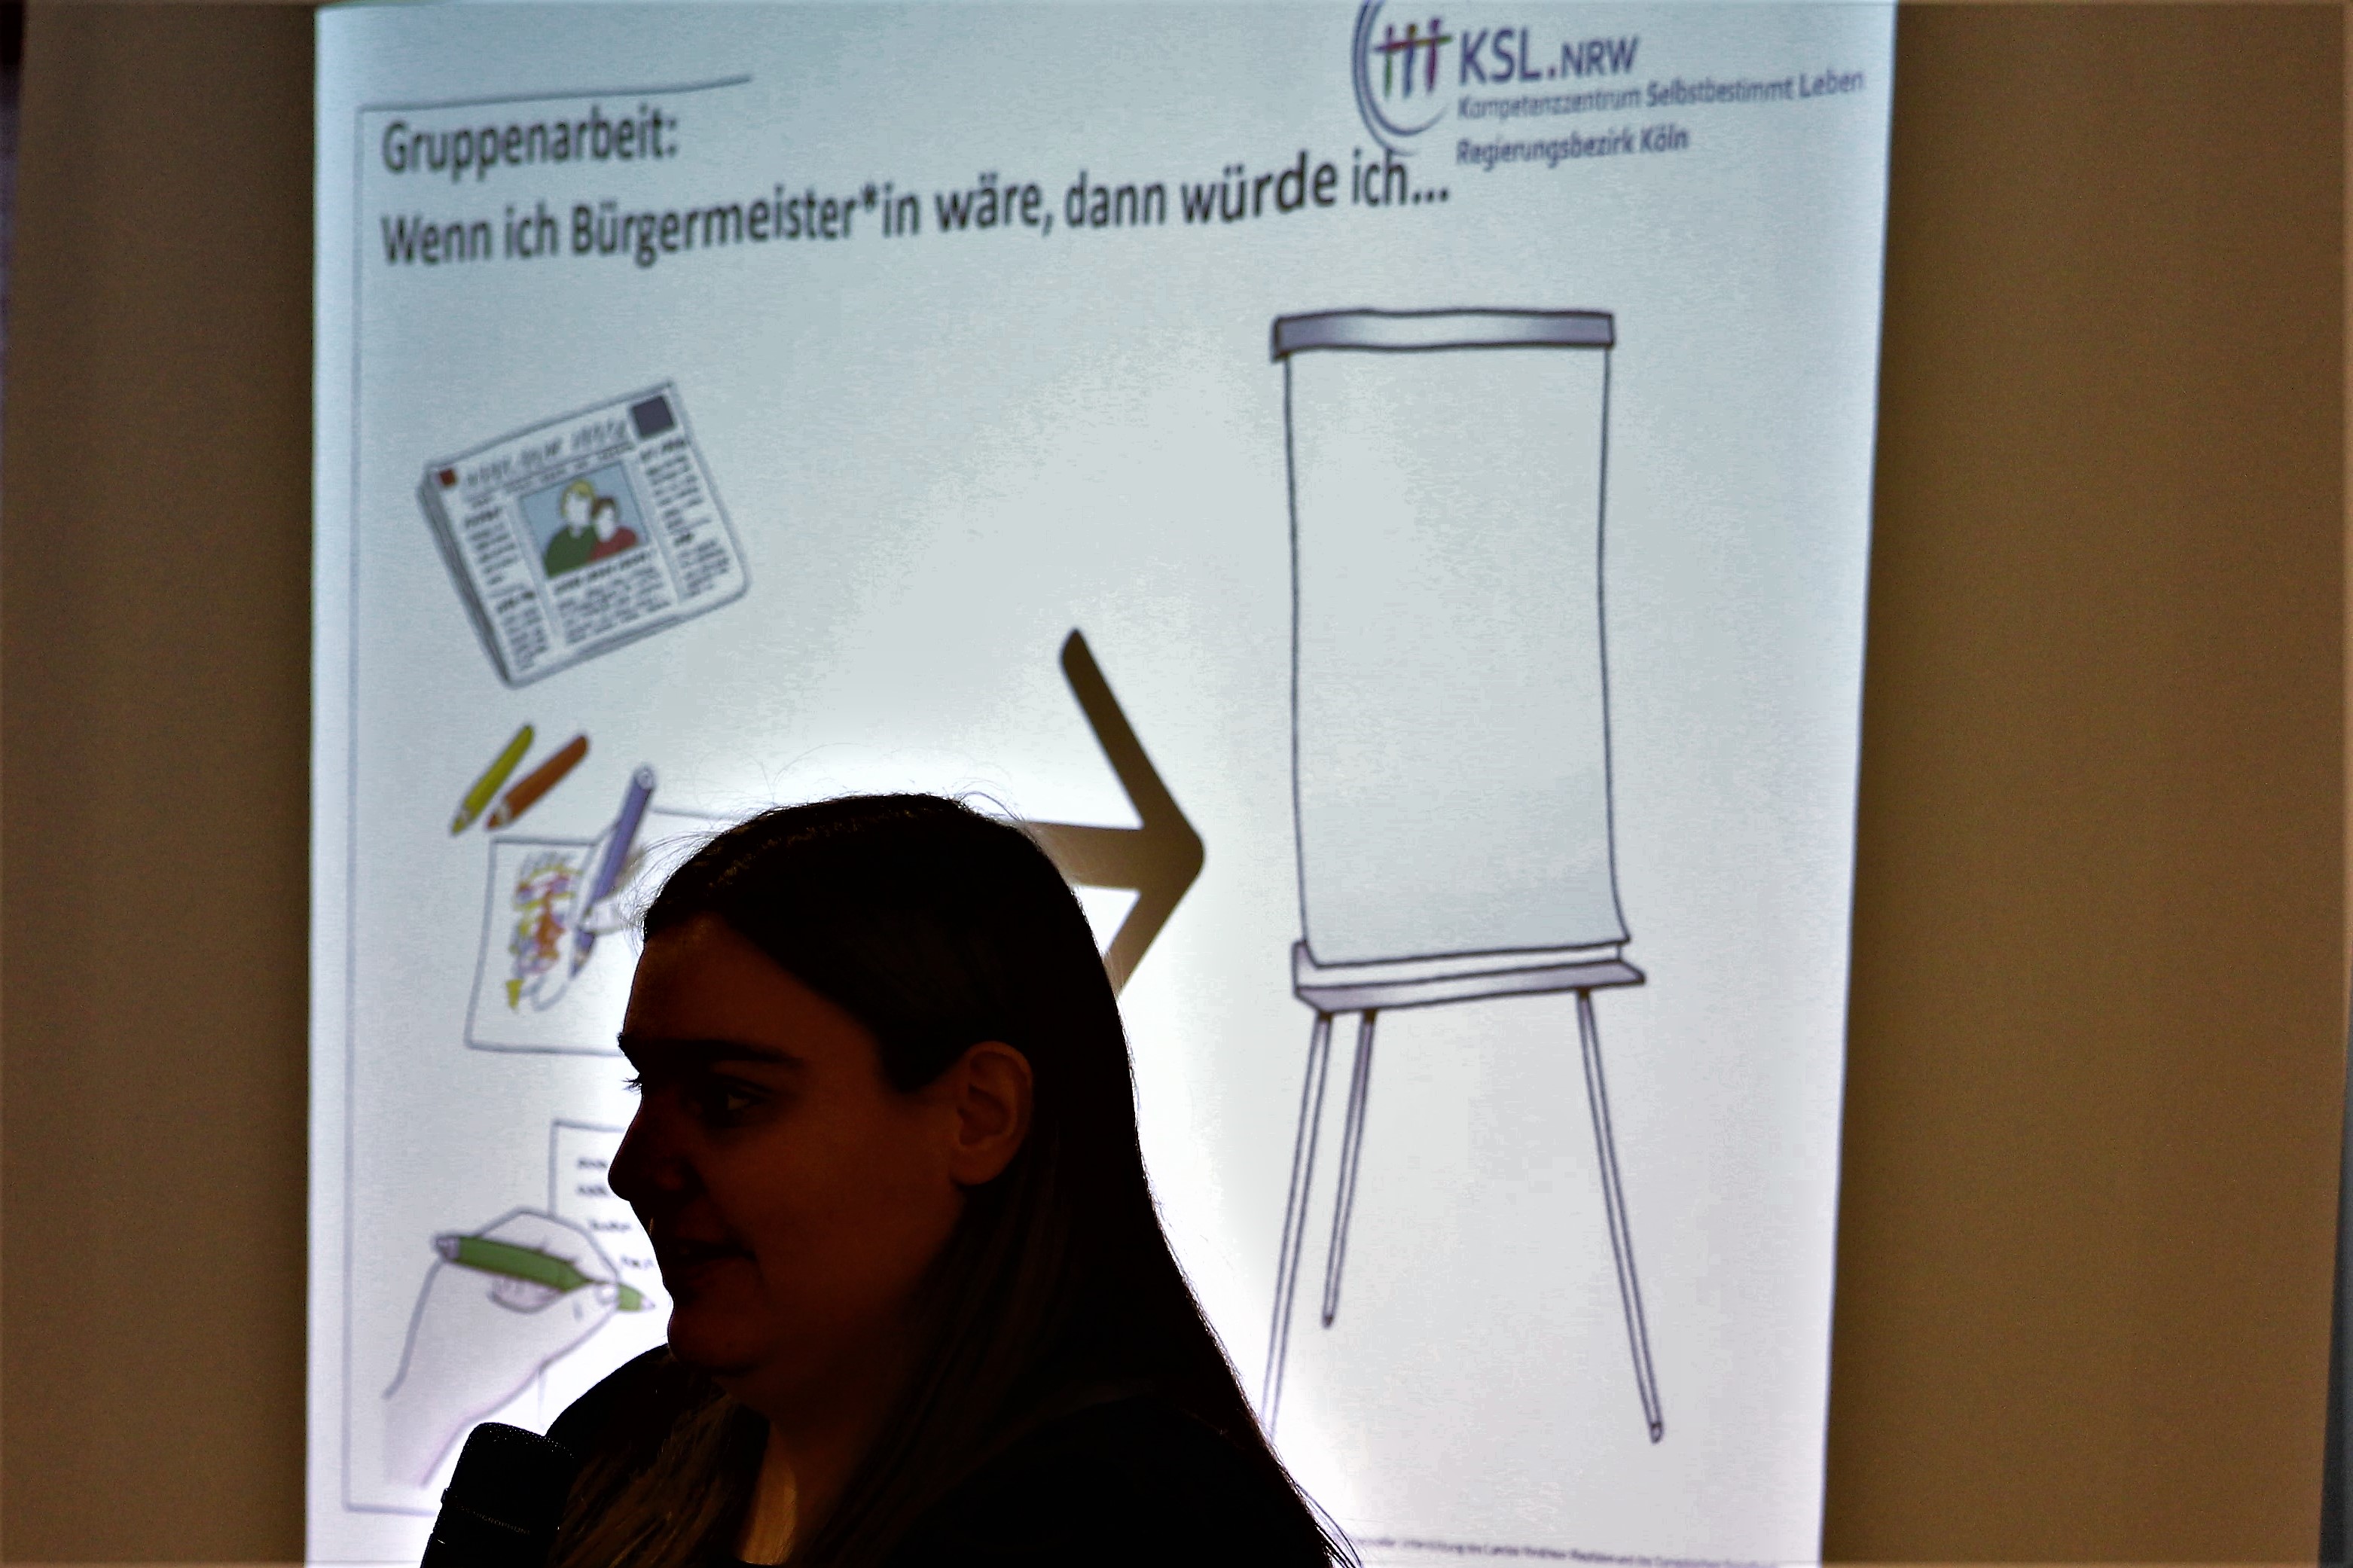 Das Bild zeigt eine Teilnehmerin vor einer Präsentation.